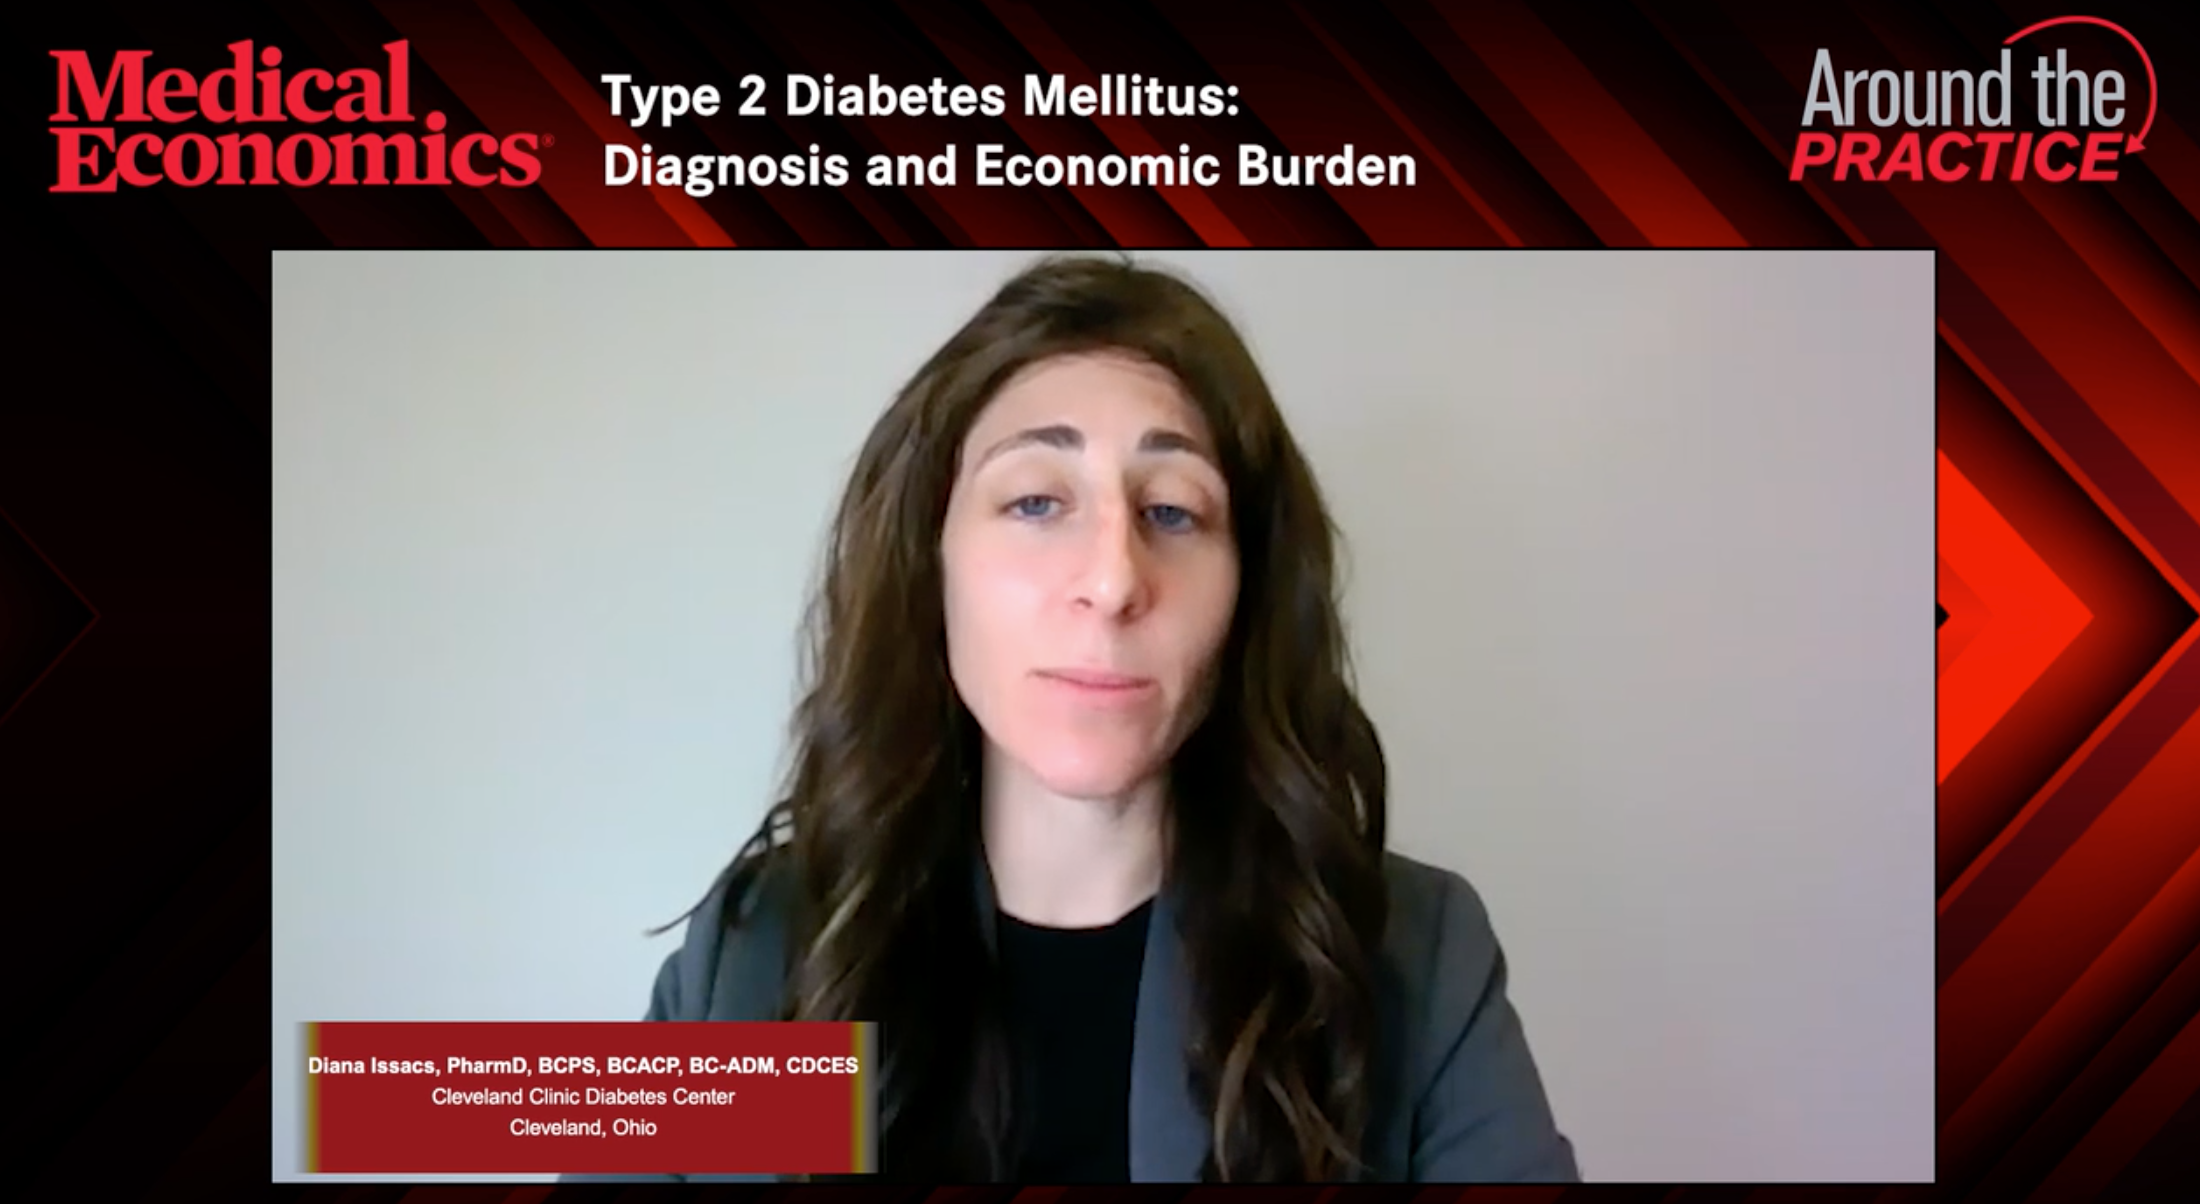 Type 2 Diabetes Mellitus: Diagnosis and Economic Burden